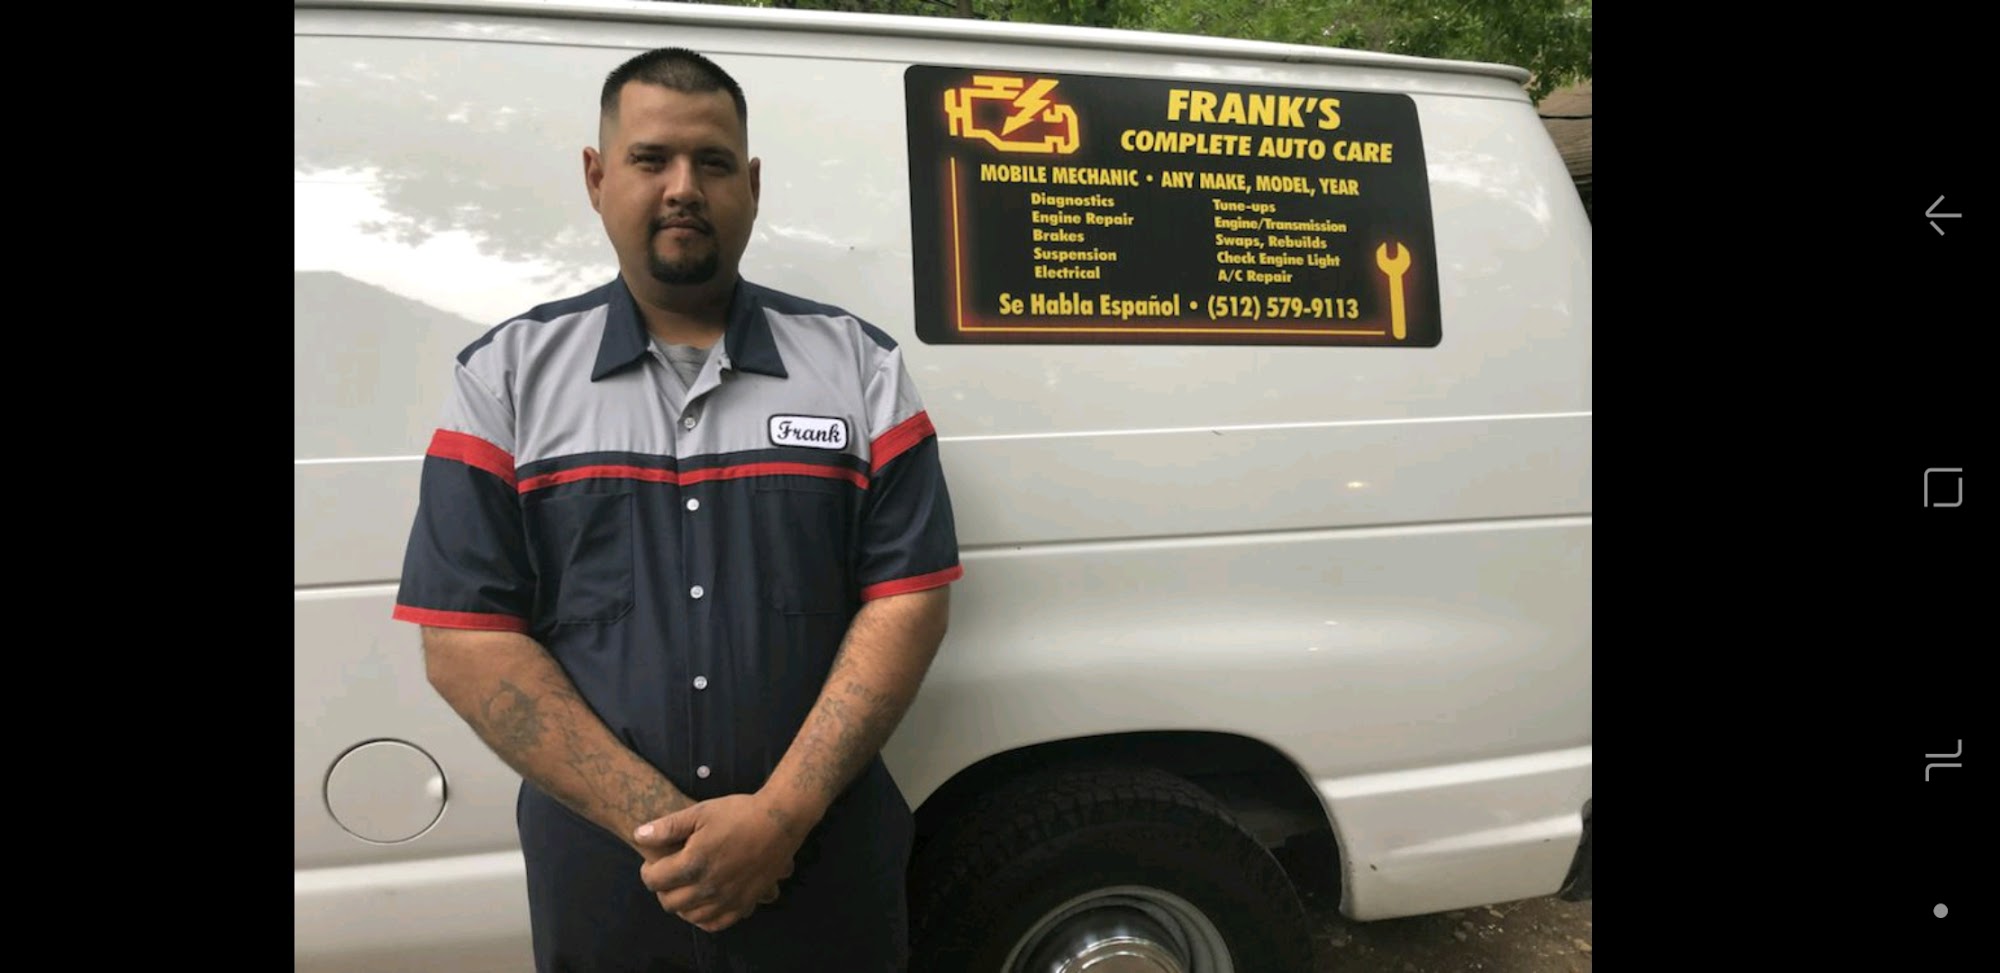 Frank's Complete Mobile Auto Care